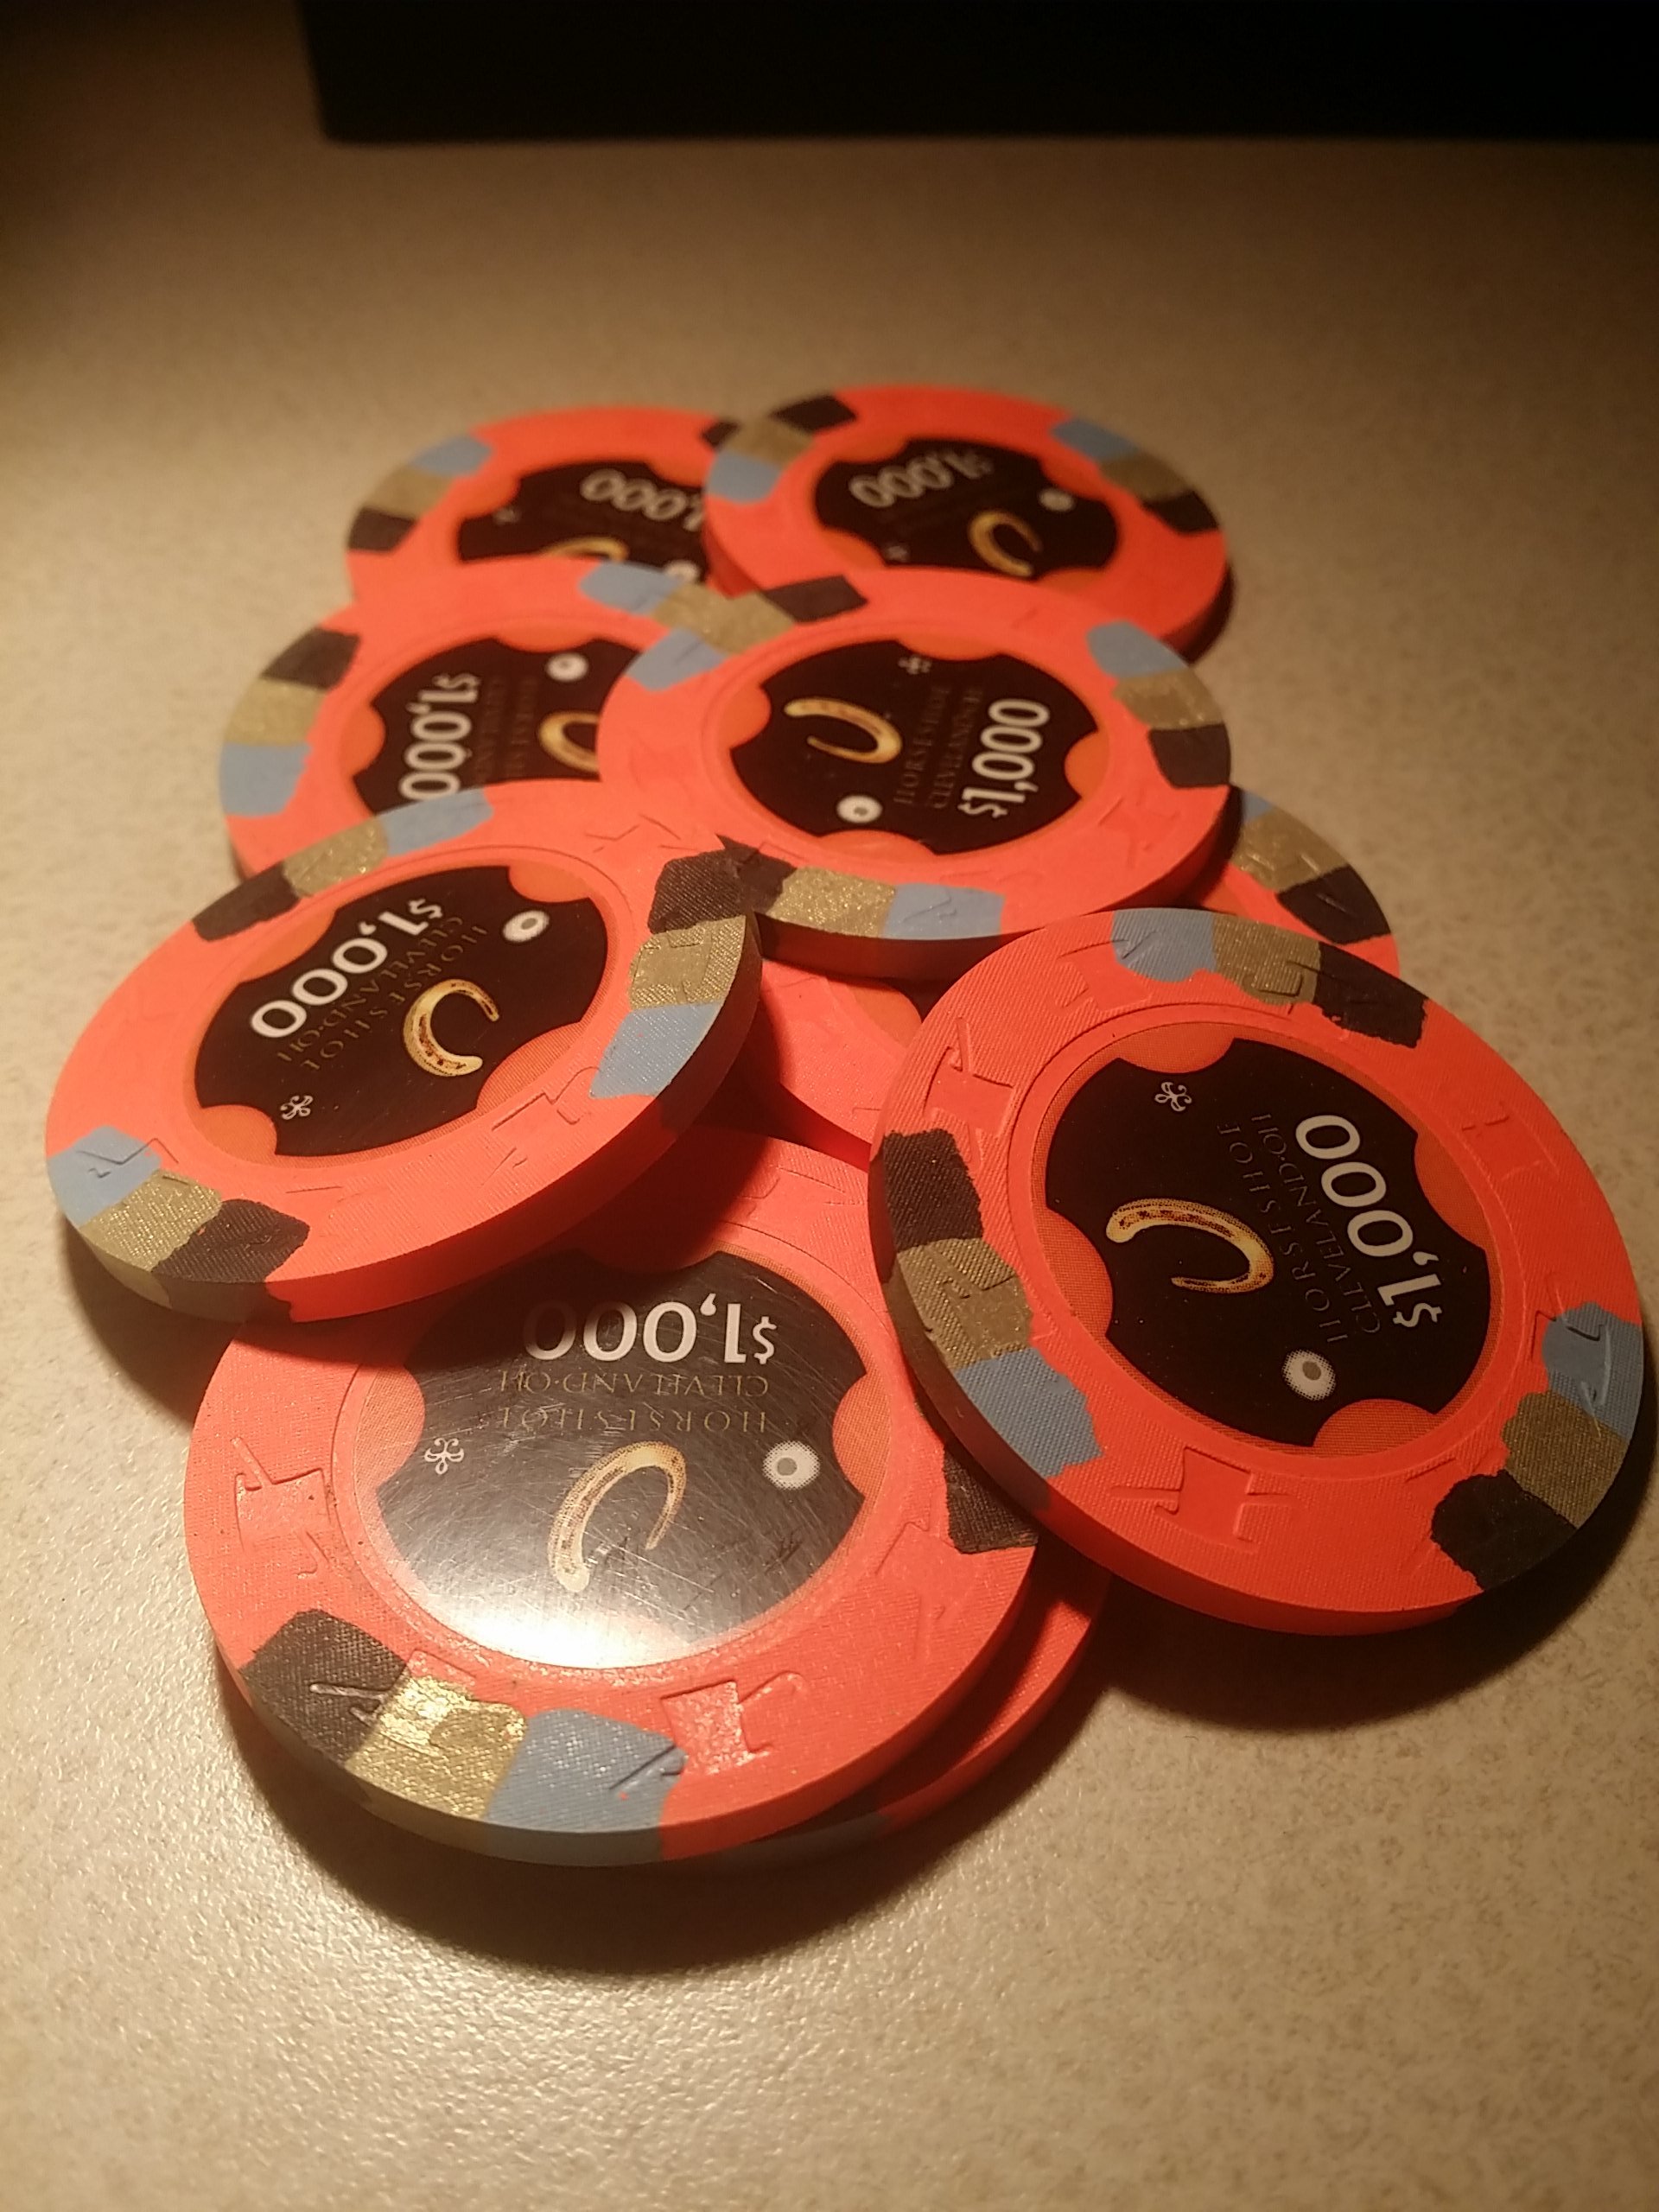 Horseshoe Casino Cleveland Chips - $1000s